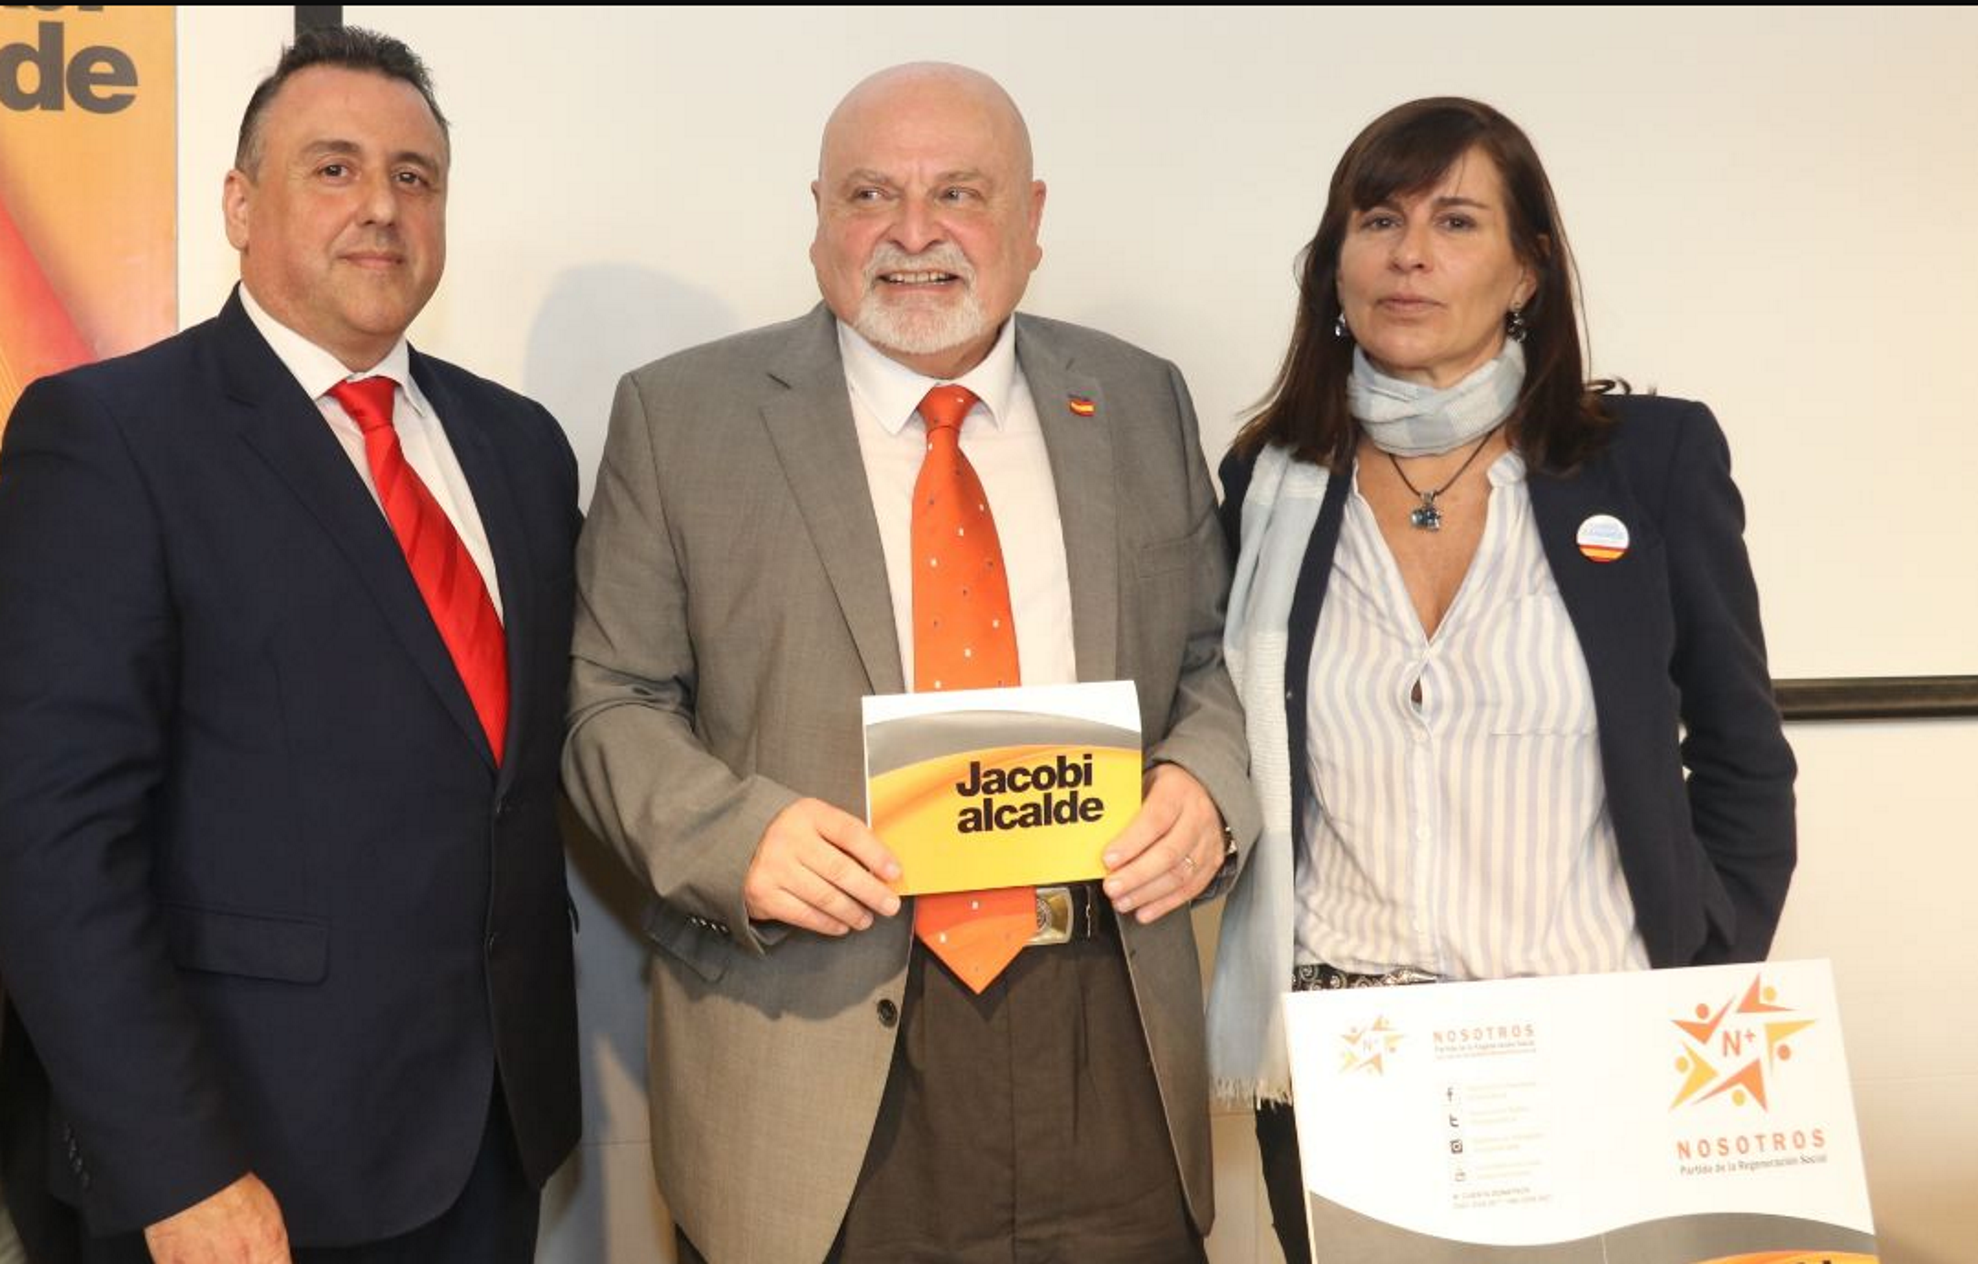 La candidatura de l'espanyolista Karl Jacobi naufraga abans de començar